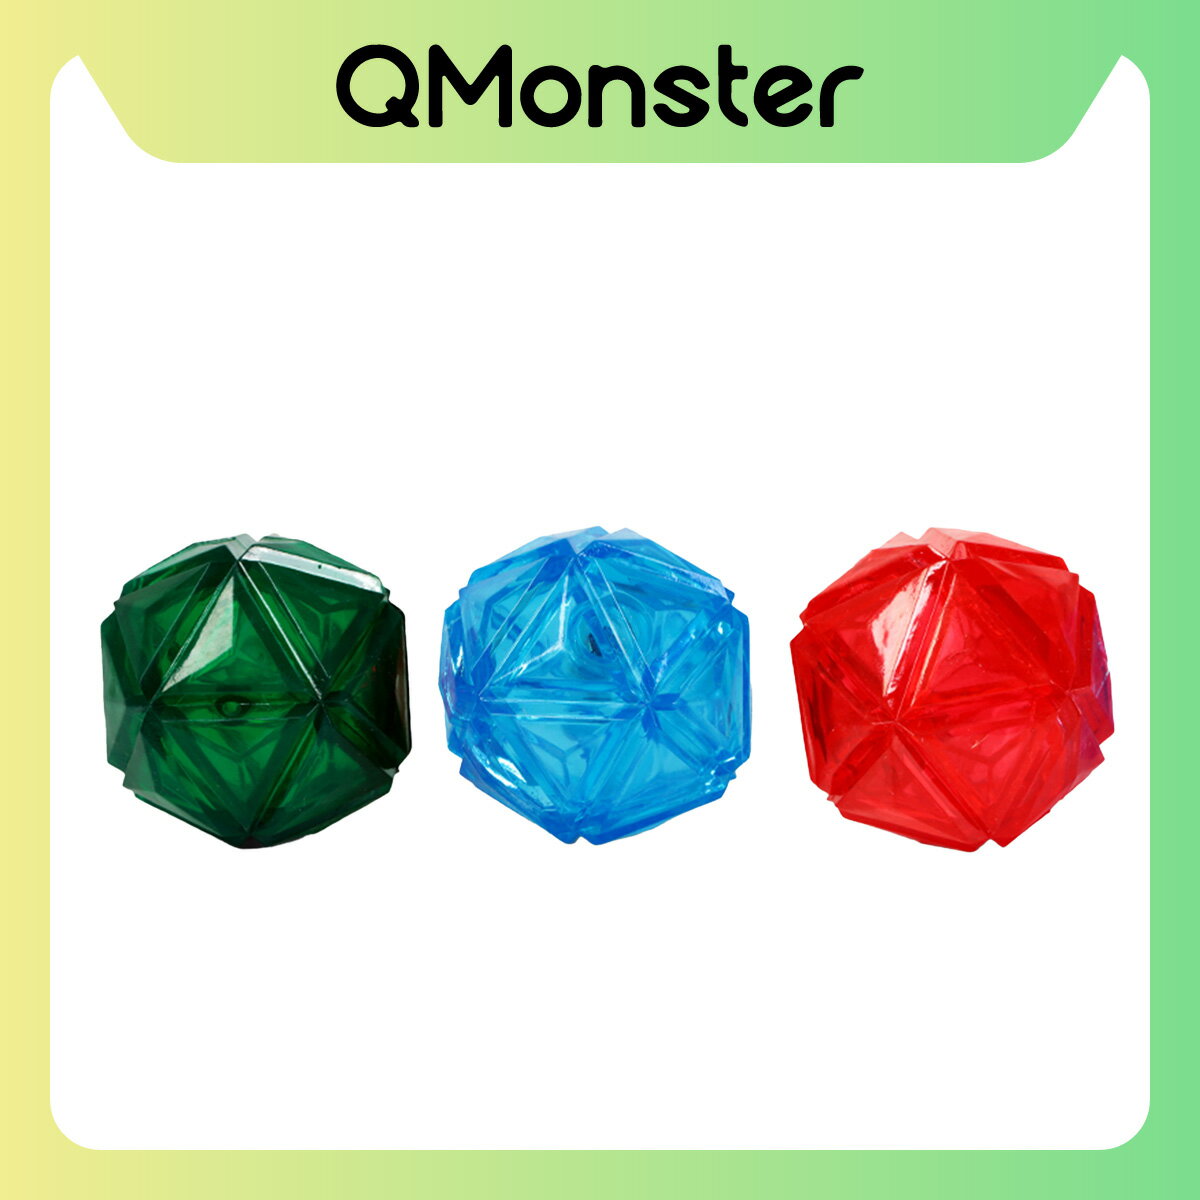 【Q-MONSTER】星際閃光球 狗玩具 發聲玩具 寵物玩具 毛絨玩具 狗狗玩具 Q MONSTER